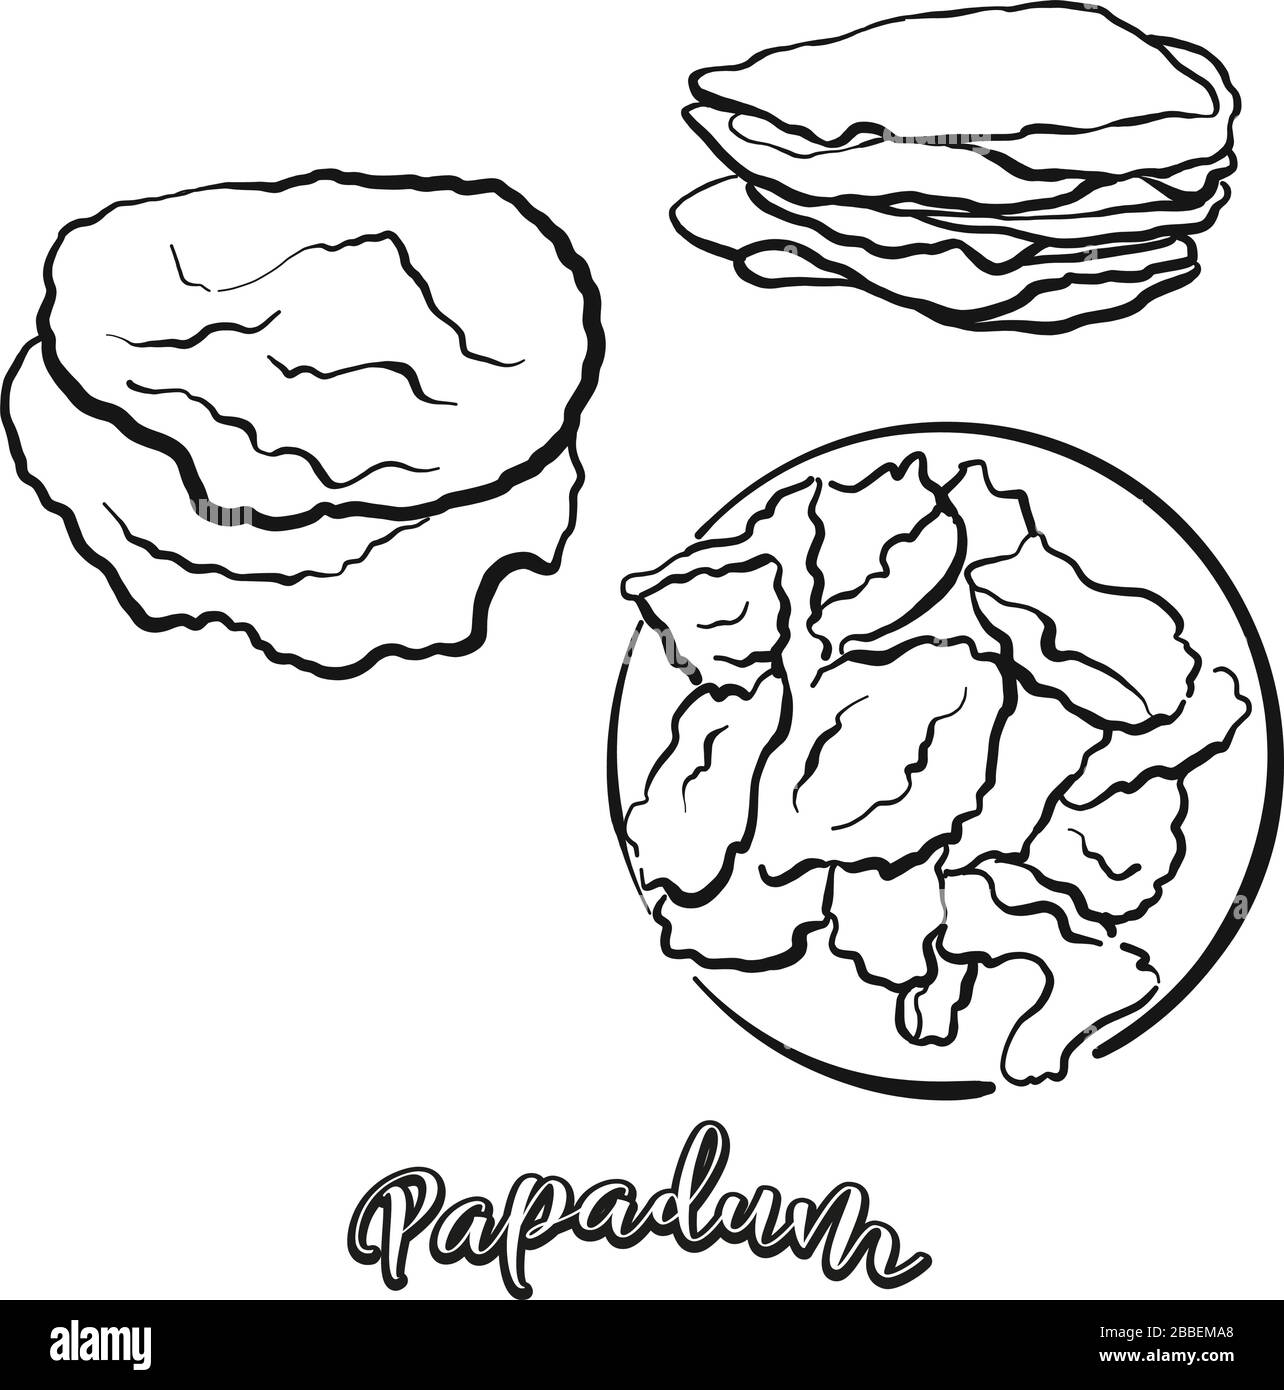 Papadum-Essenskizze auf Weiß abgegrenzt. Vektorzeichnung von Fladenbrot, in Indien meist bekannt. Lebensmittel-Illustration-Serie. Stock Vektor